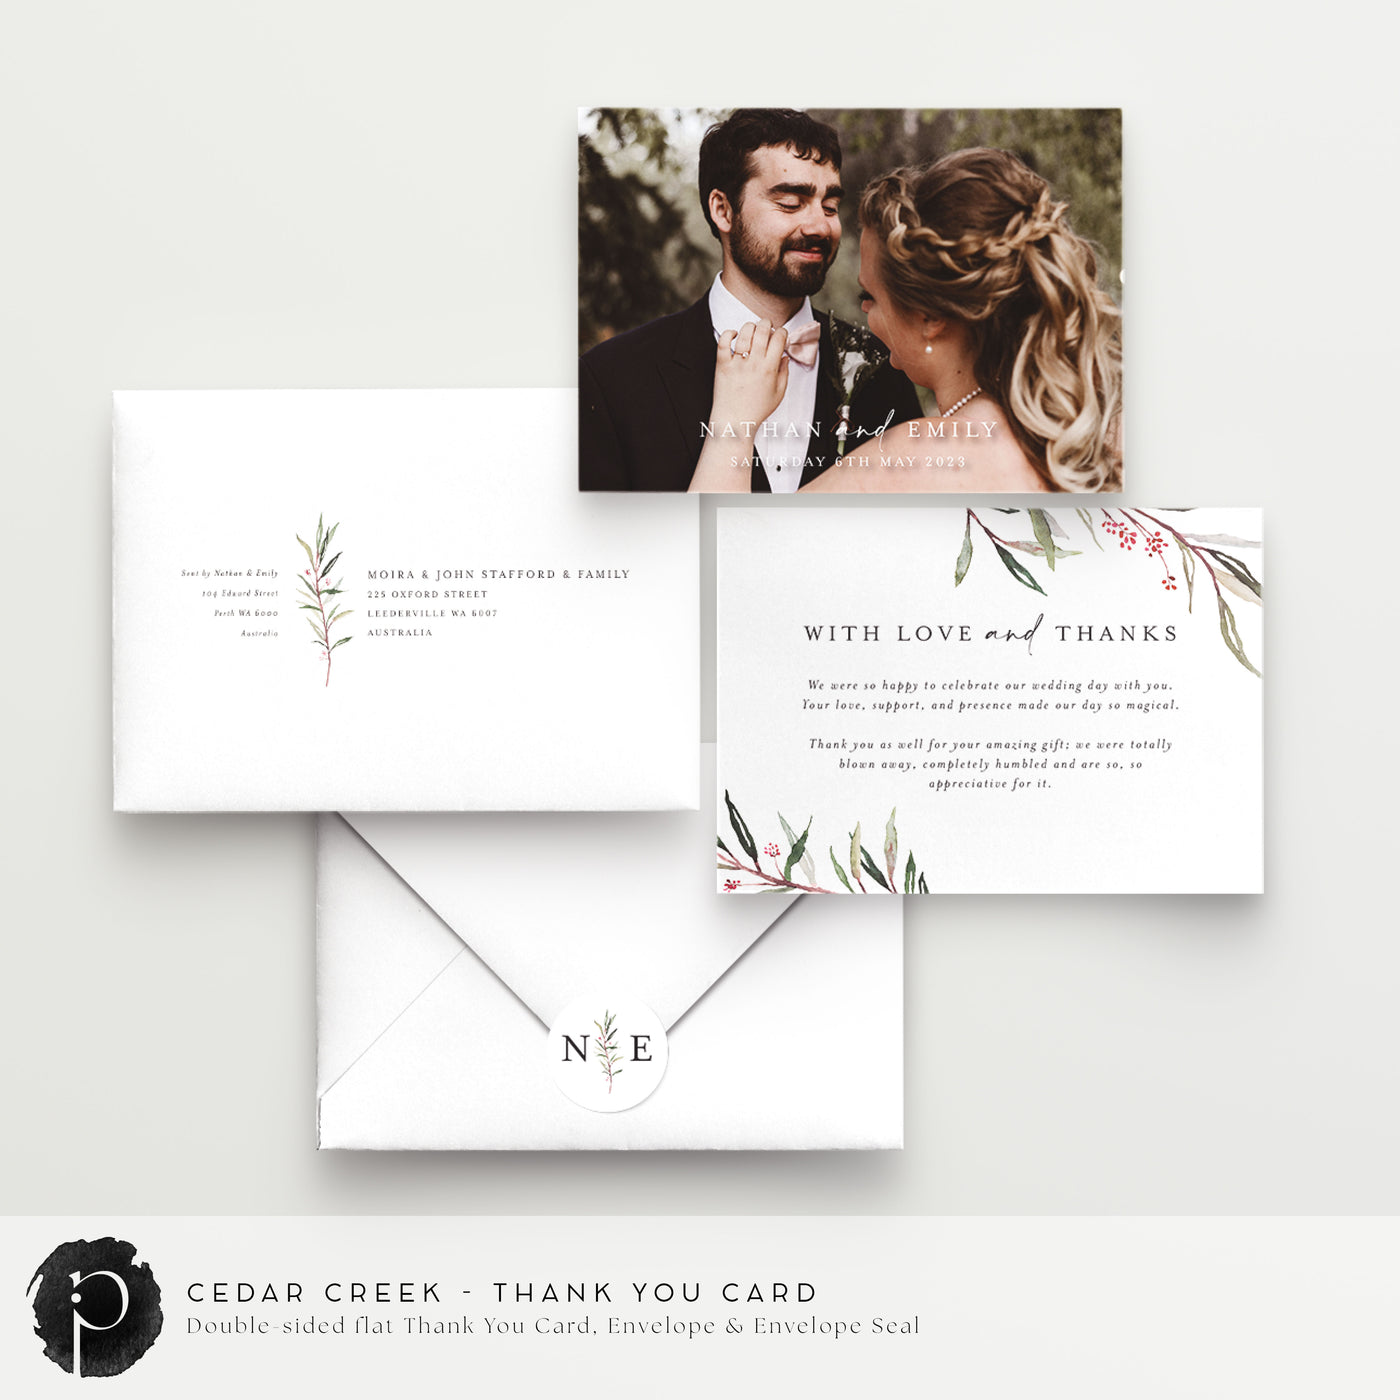 Cedar Creek - Wedding Thank You Cards